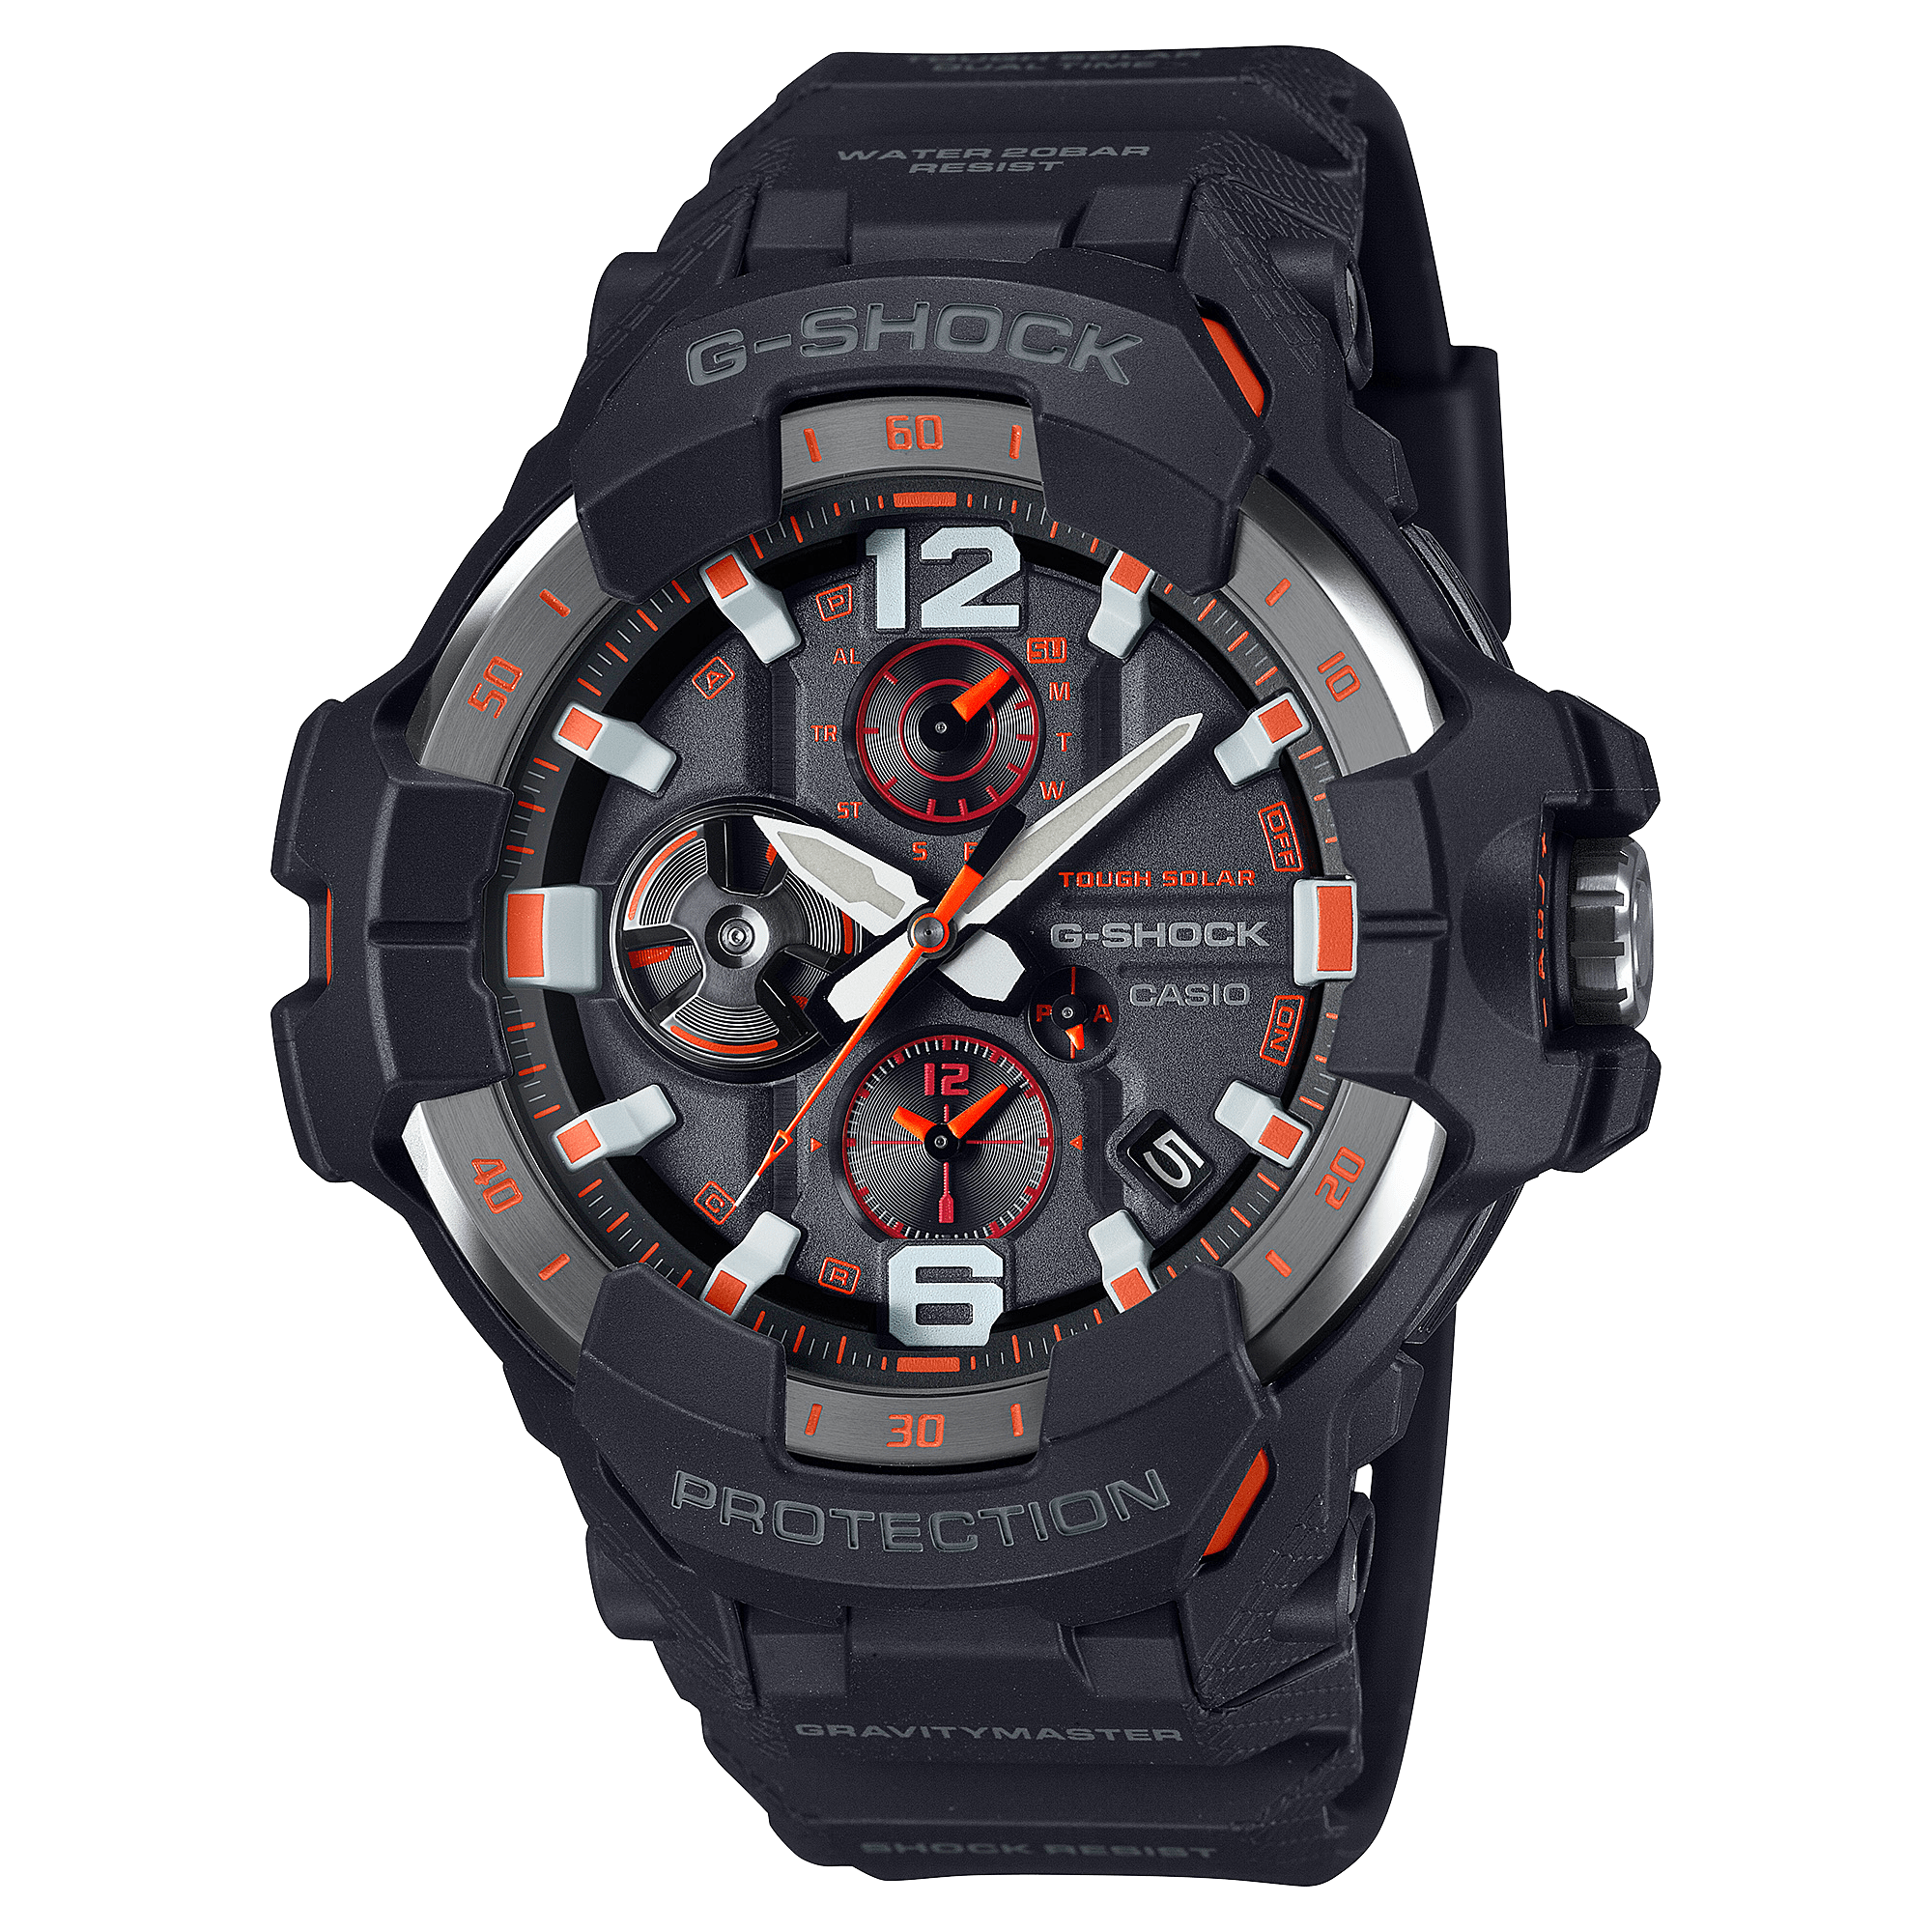 G-Shock Master of G GRAVITYMASTER Black-Orange Men's Watch GRB300-1A4